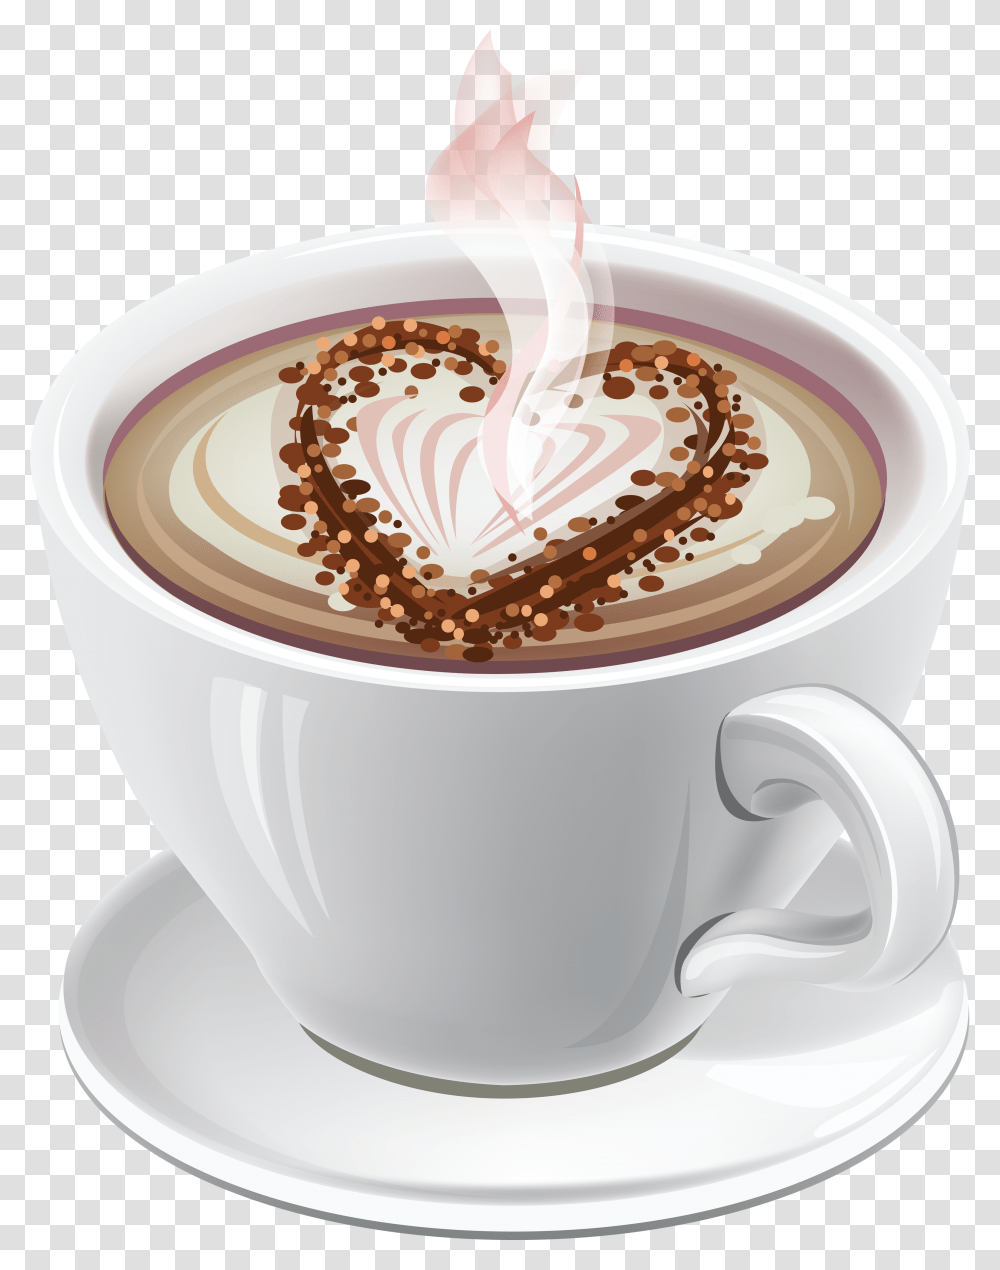 Mug Coffee, Drink, Latte, Coffee Cup, Beverage Transparent Png